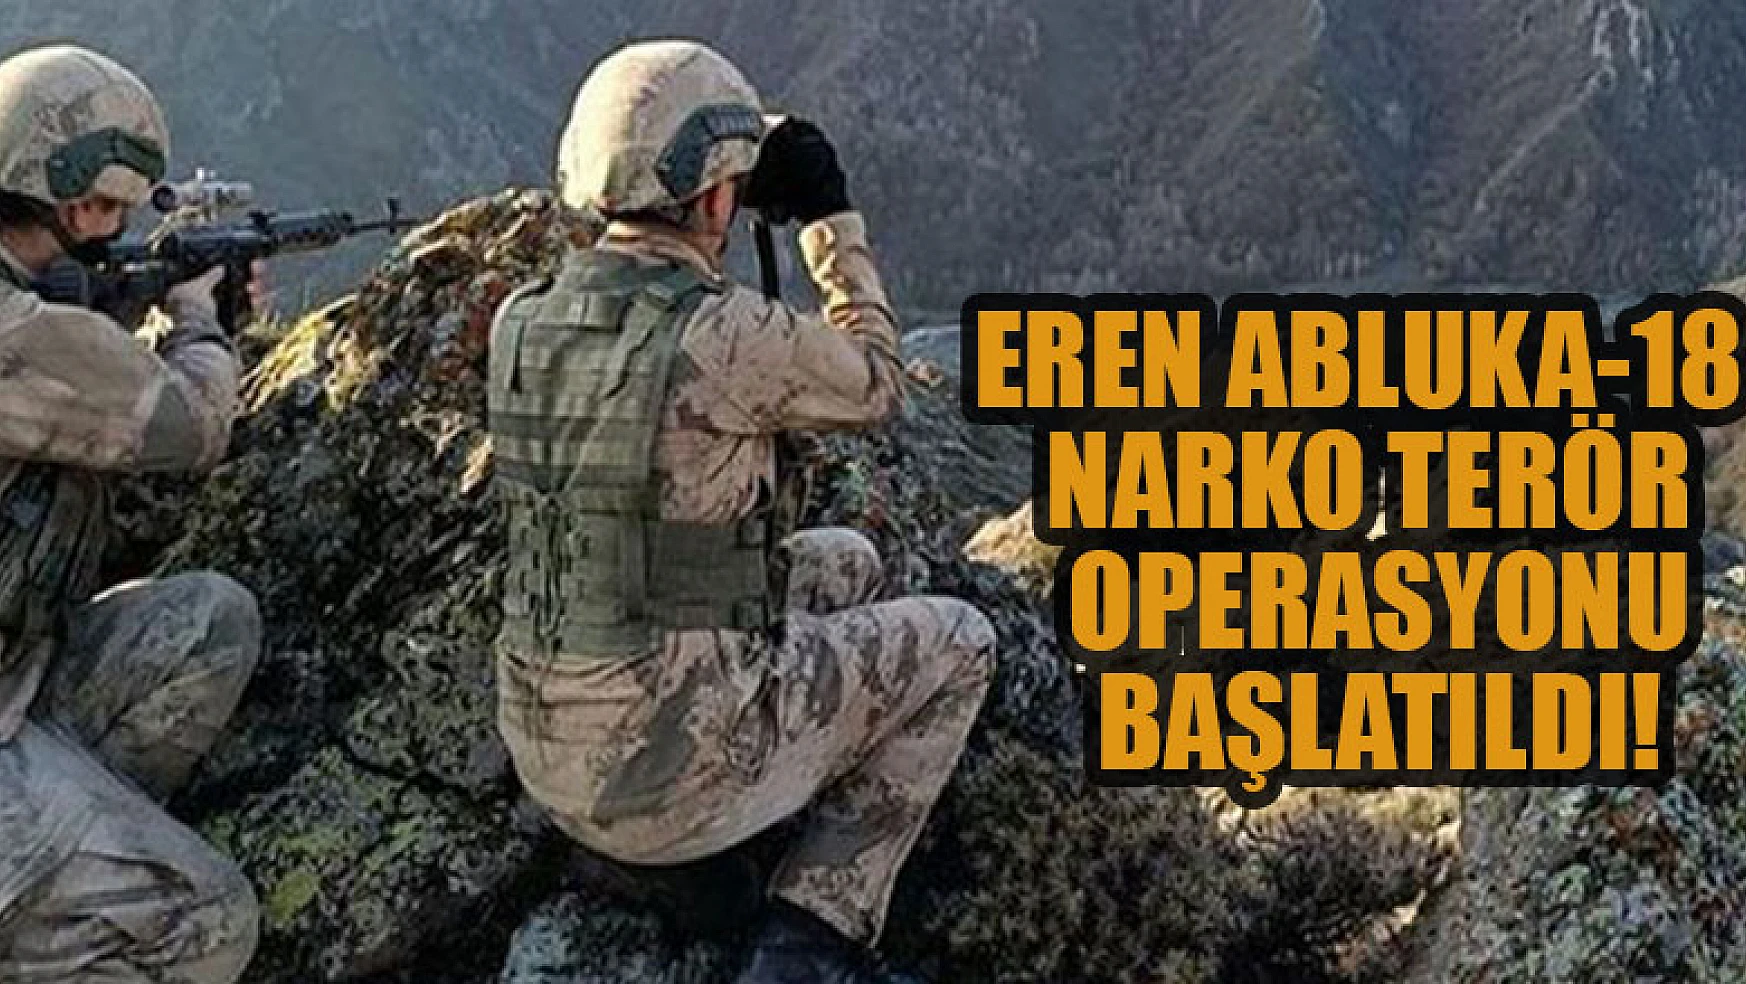 Eren Abluka-18 Narko Terör Operasyonu başlatıldı